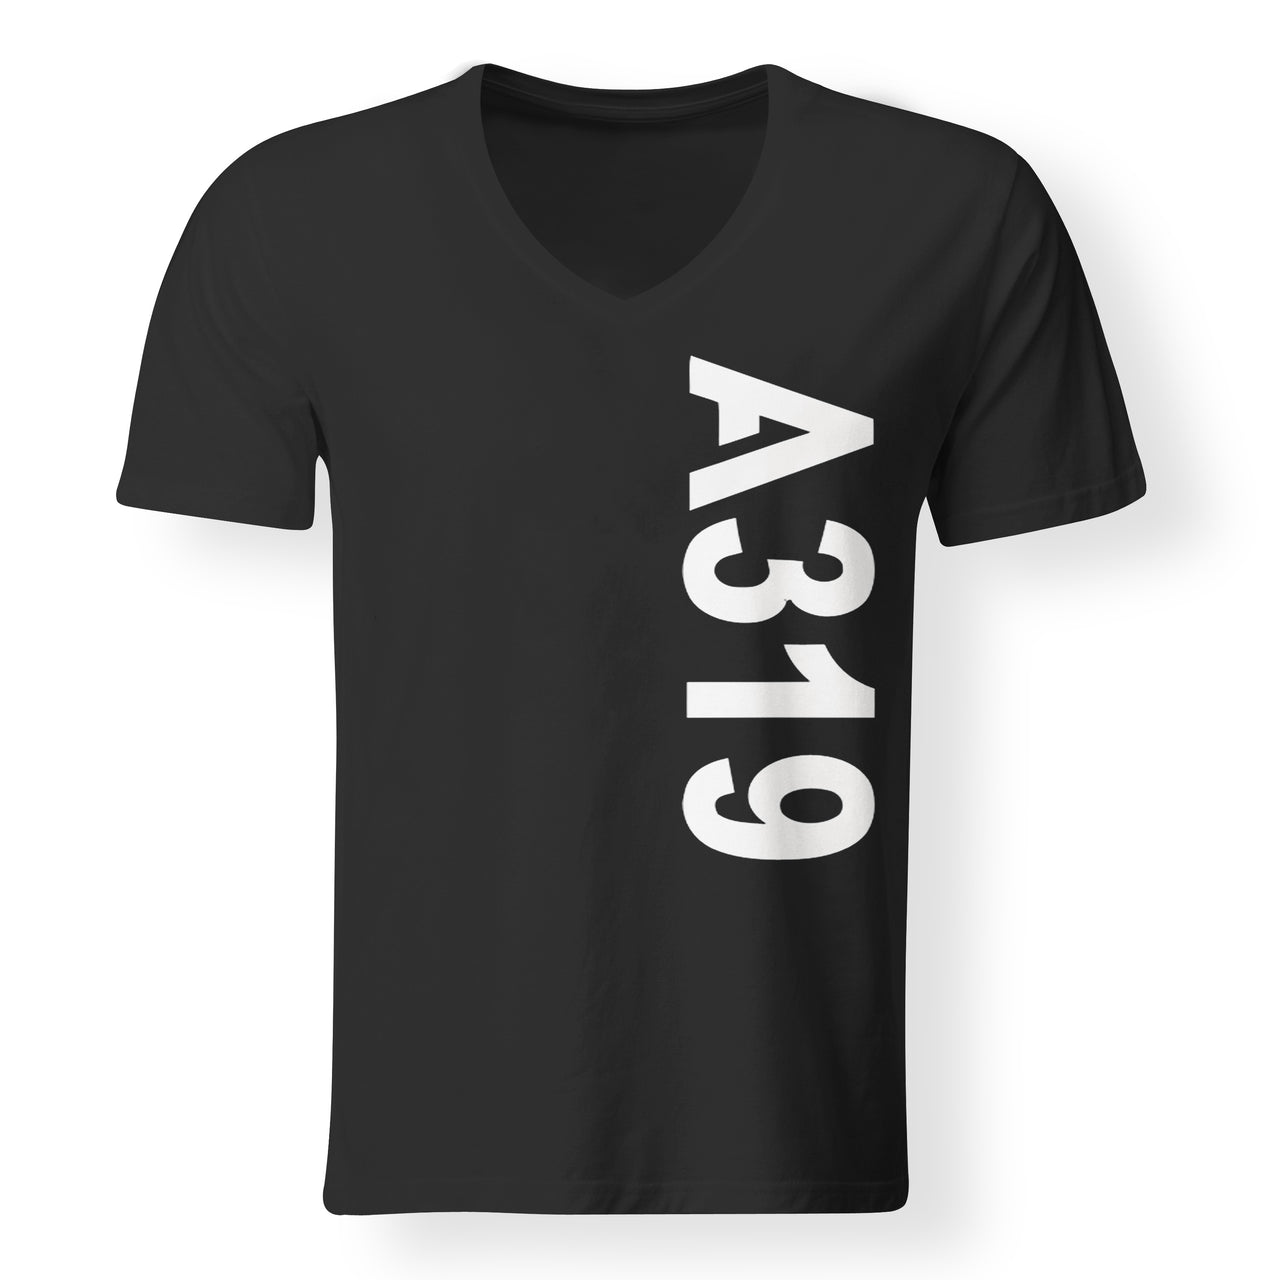 A319 Text Designed V-Neck T-Shirts